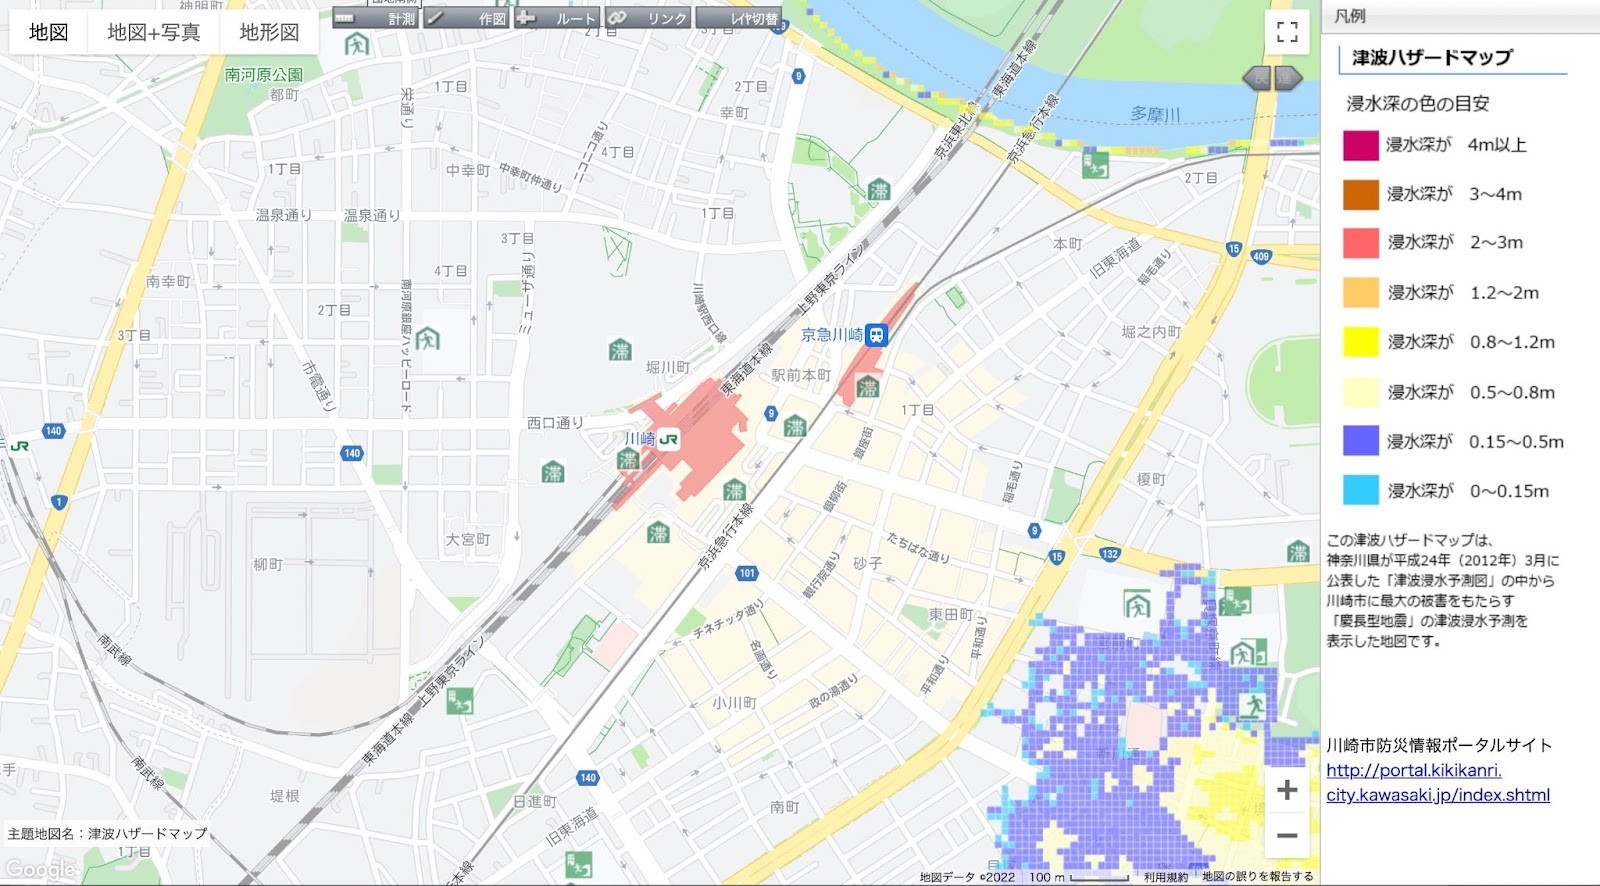 川崎駅周辺の津波ハザードマップ